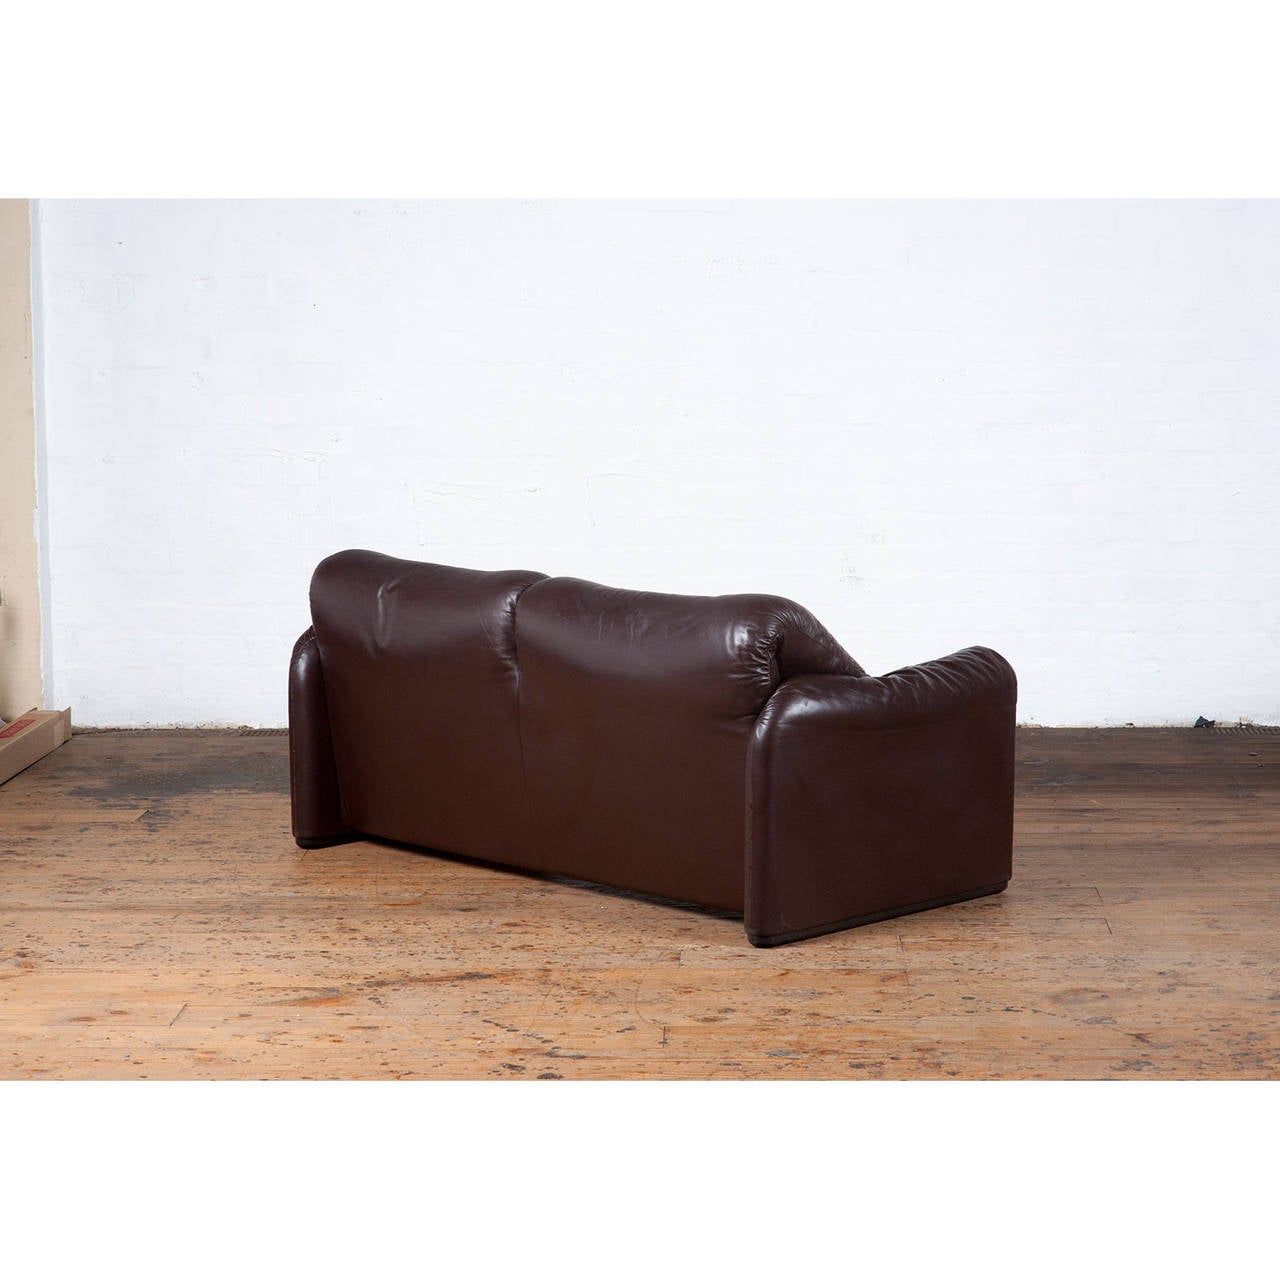 1970s 'Maralunga' Dark Brown Leather Sofa by Vico Magistretti for Cassina In Good Condition For Sale In Melbourne, Victoria